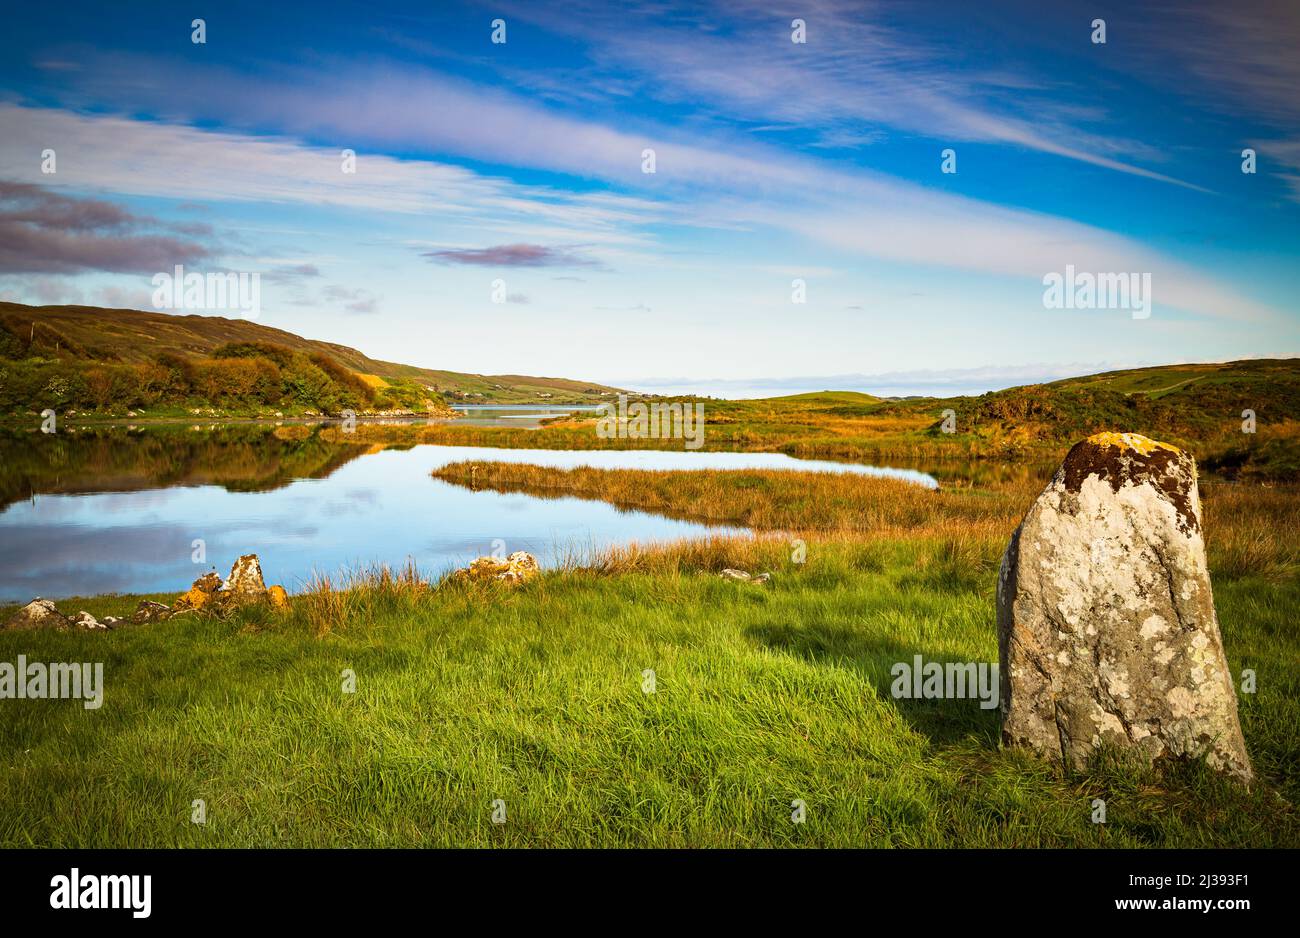 Letterdeen Standing Stone, am östlichen Ende der Streamstown Bay, Connemara, County Galway, Irland. Dieser Megalith aus Granit ist 1,6m hoch. Stockfoto